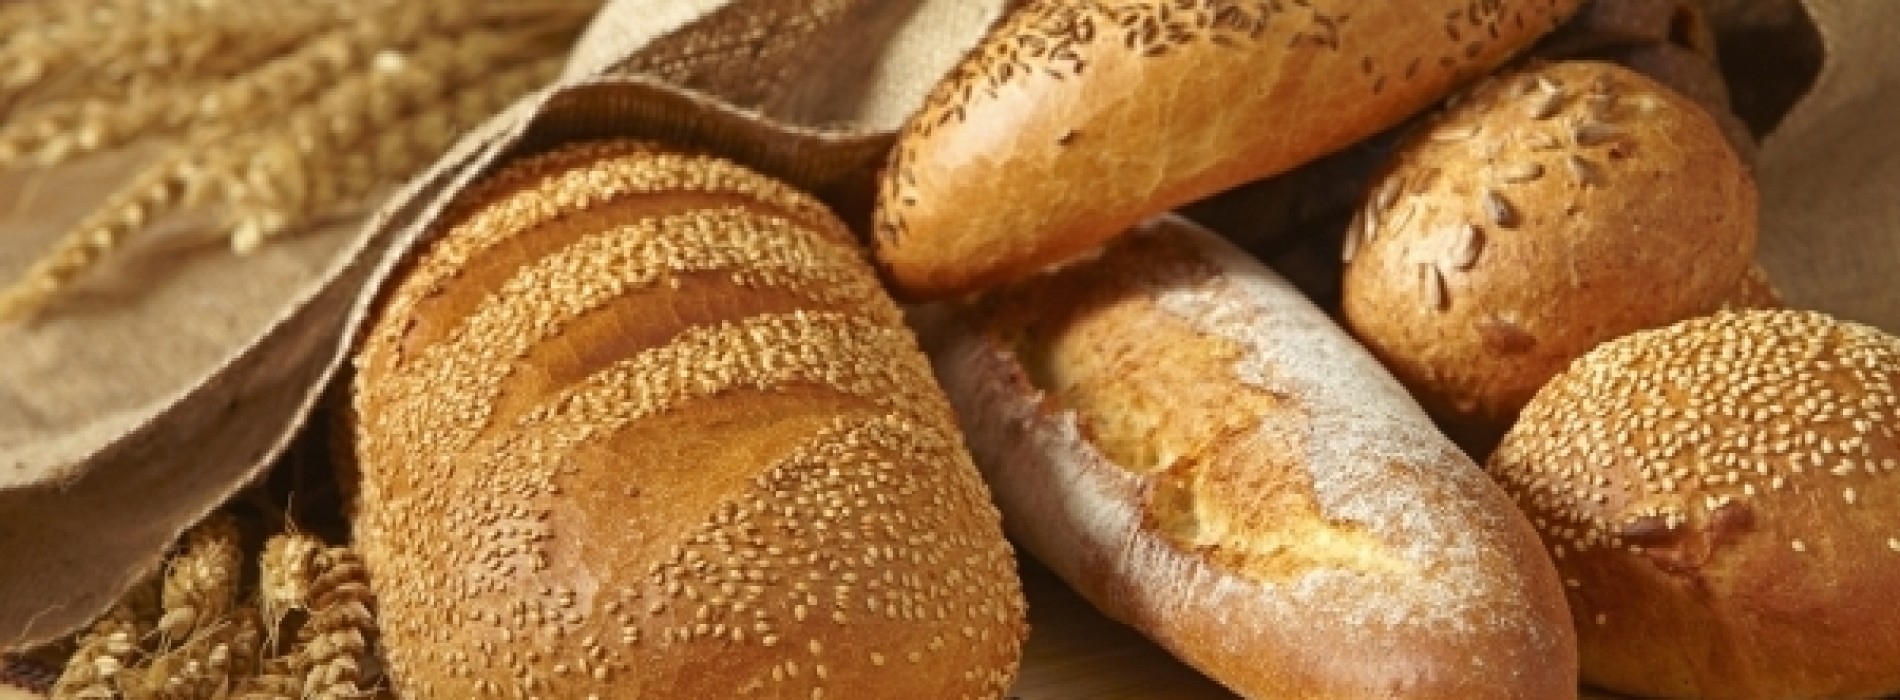 Czy chleb może być źródłem dochodu?